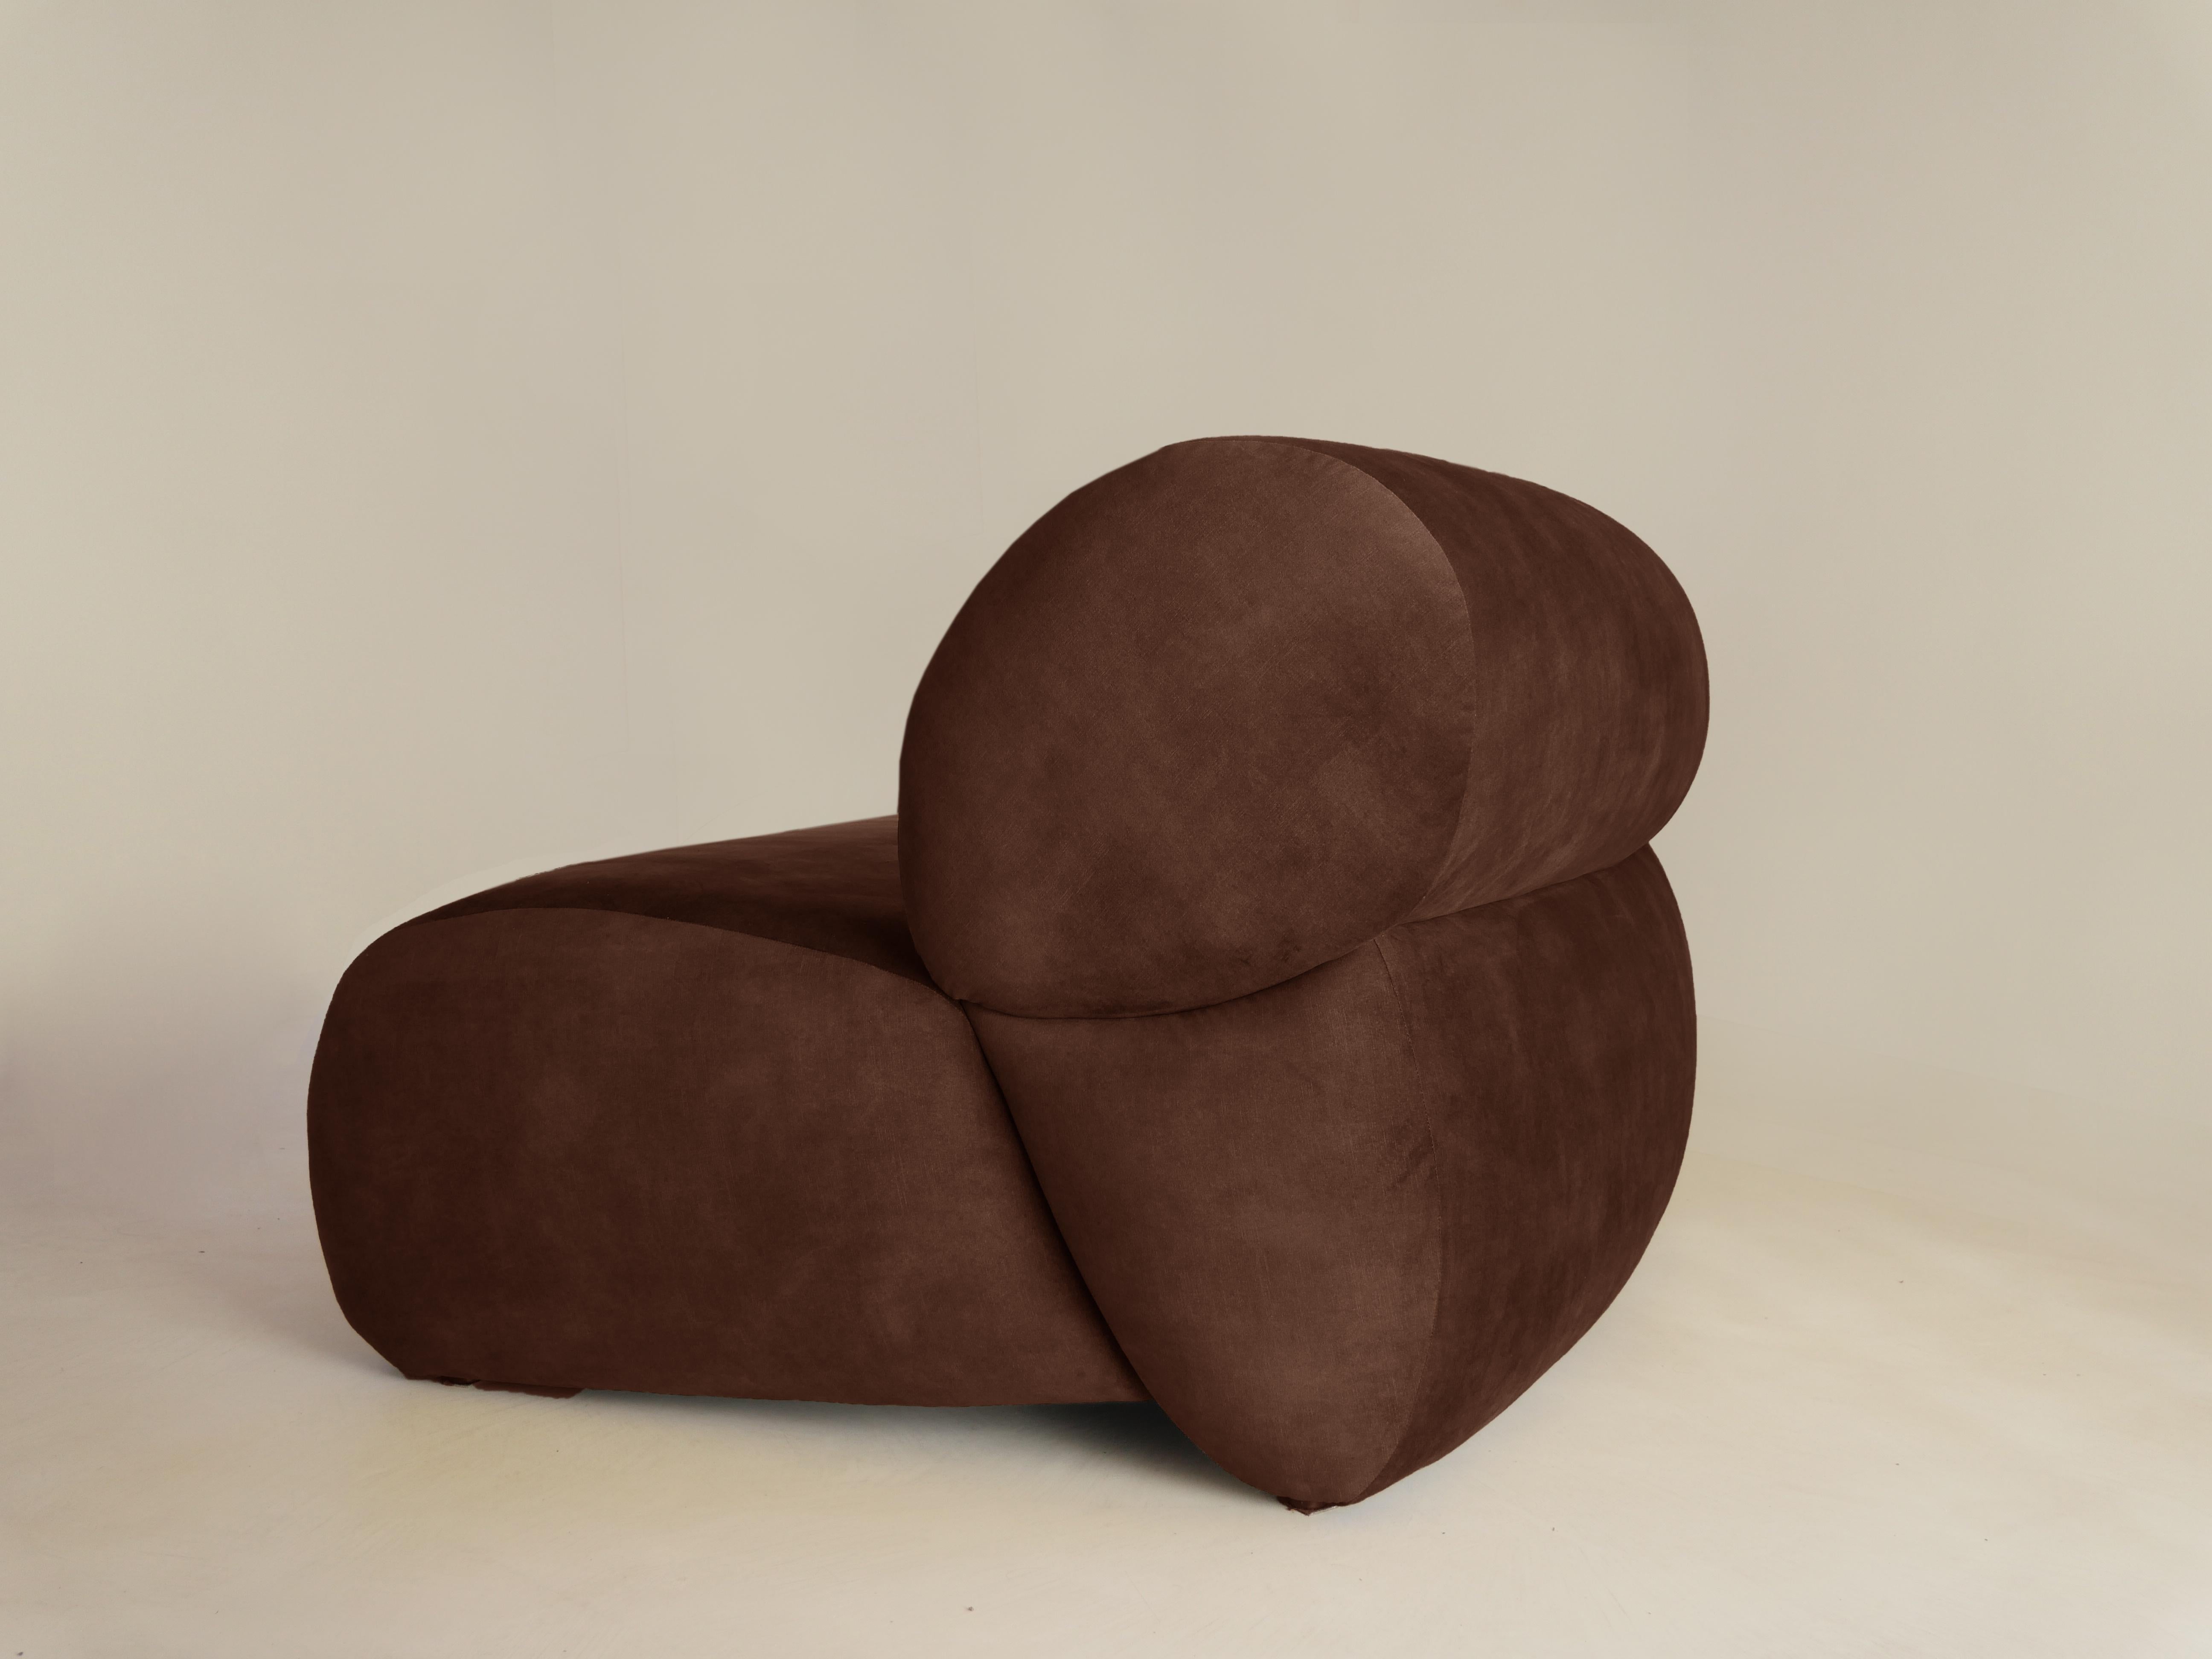 Unser Sofa Pipa ist eines der neuesten Stücke der Collection'S. 
Ein geschwungenes Sofa mit organischen Formen, das Wärme und Komfort in den Raum bringt. 
Es ist ein vielseitiges und einzigartiges Stück zugleich, mit seiner schönen Silhouette, die